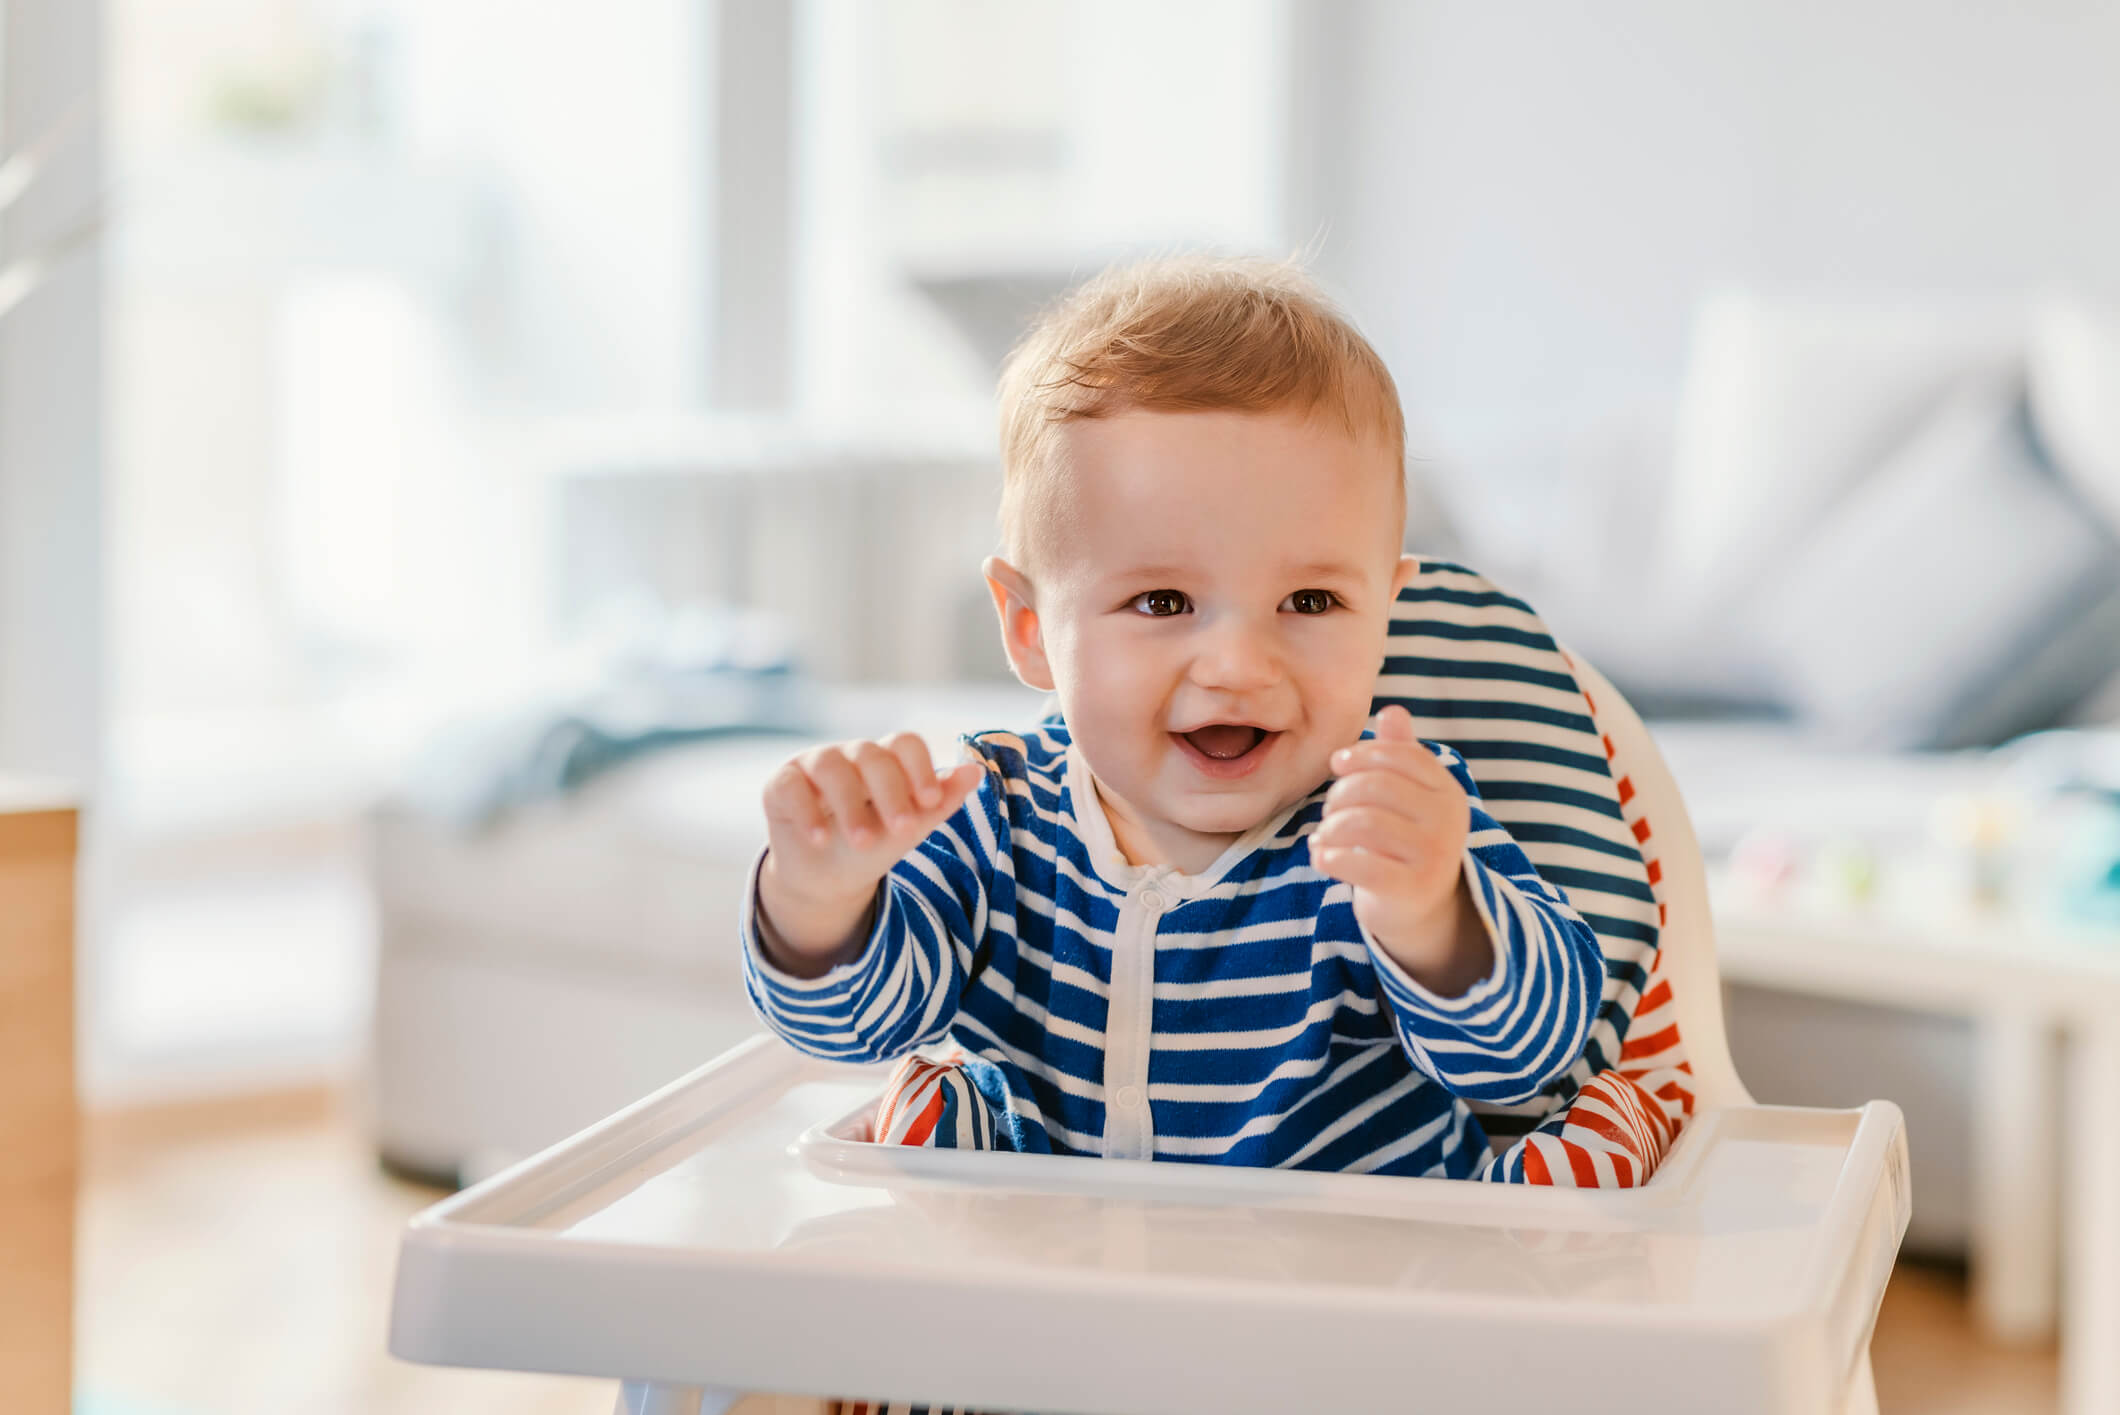 comment reagir si bébé refuse de manger